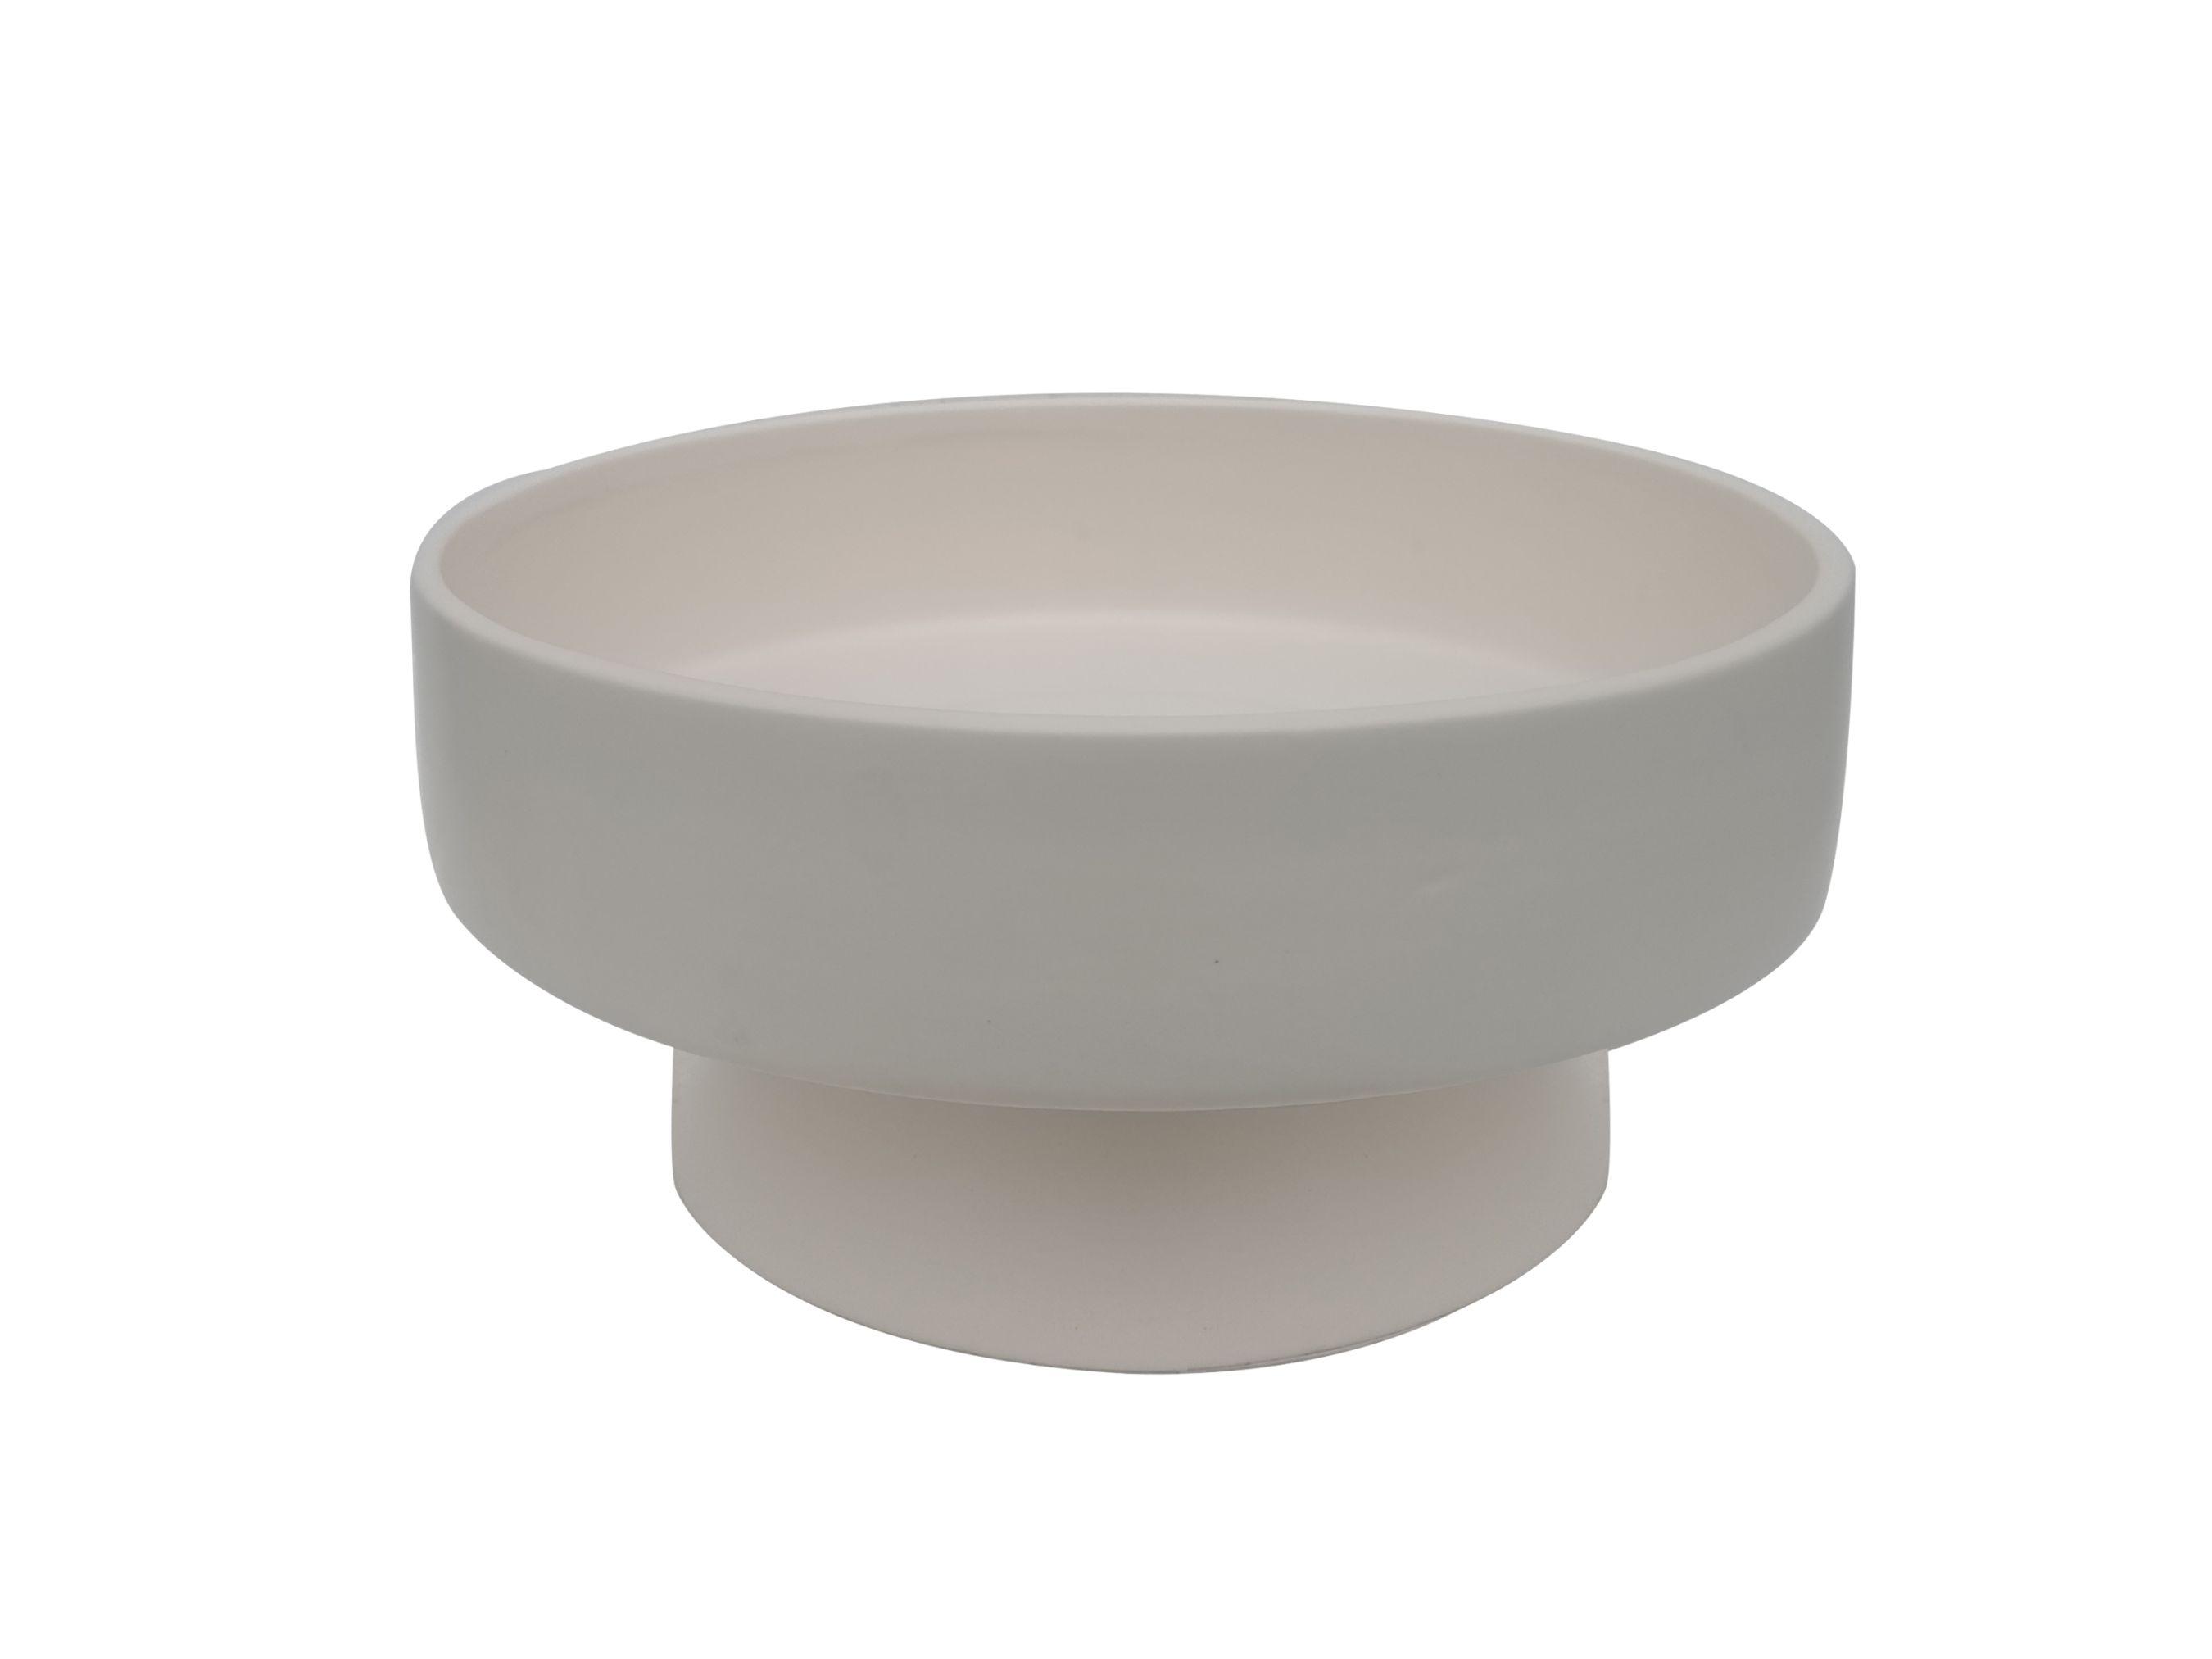 Dísztál Bowl - Fehér, modern, Kerámia (24,5/12cm) - Modern Living